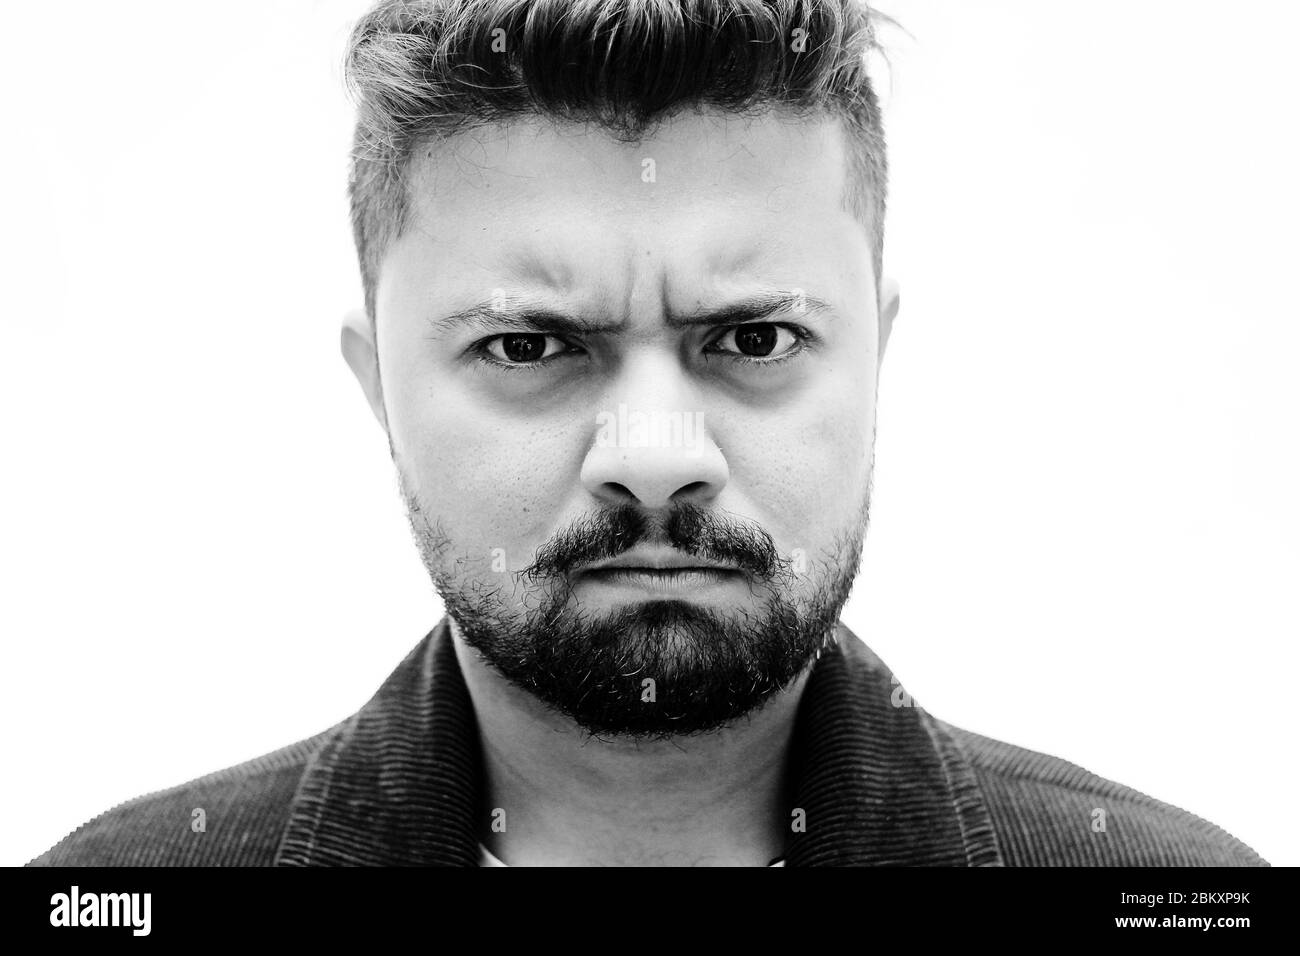 Nahaufnahme Porträt eines jungen kaukasischen Mannes wütend Gesicht Ausdruck isoliert auf weißem Hintergrund Stockfoto